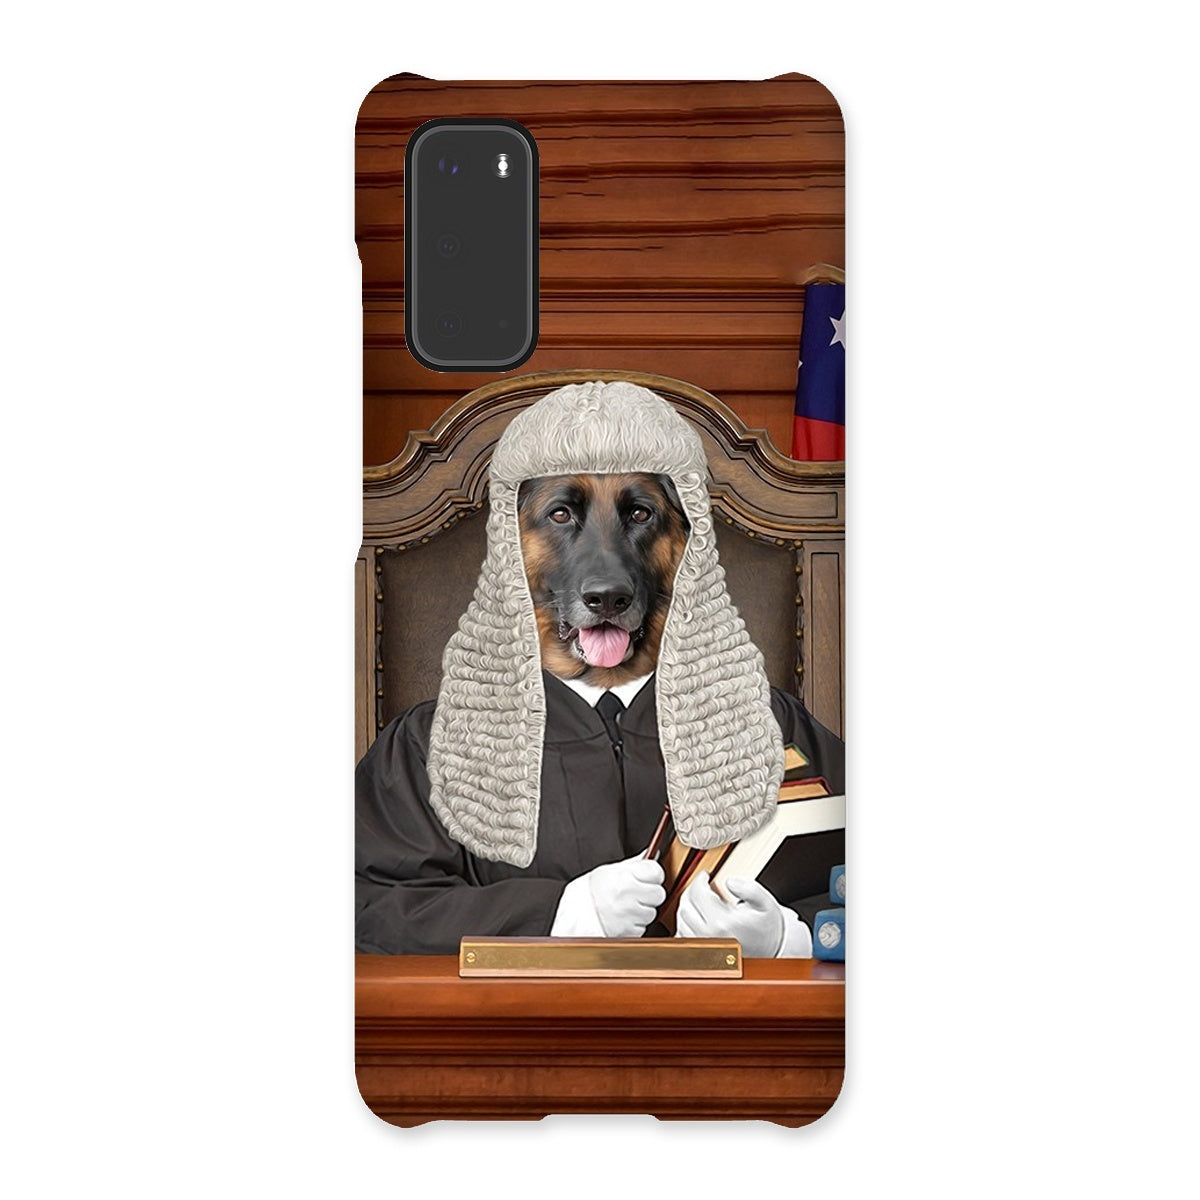 pet portraits phone case, funny dog phone case, case tablet case, tablet case of dog, professional pet photos on phone case, paw ang glory, pawandglory